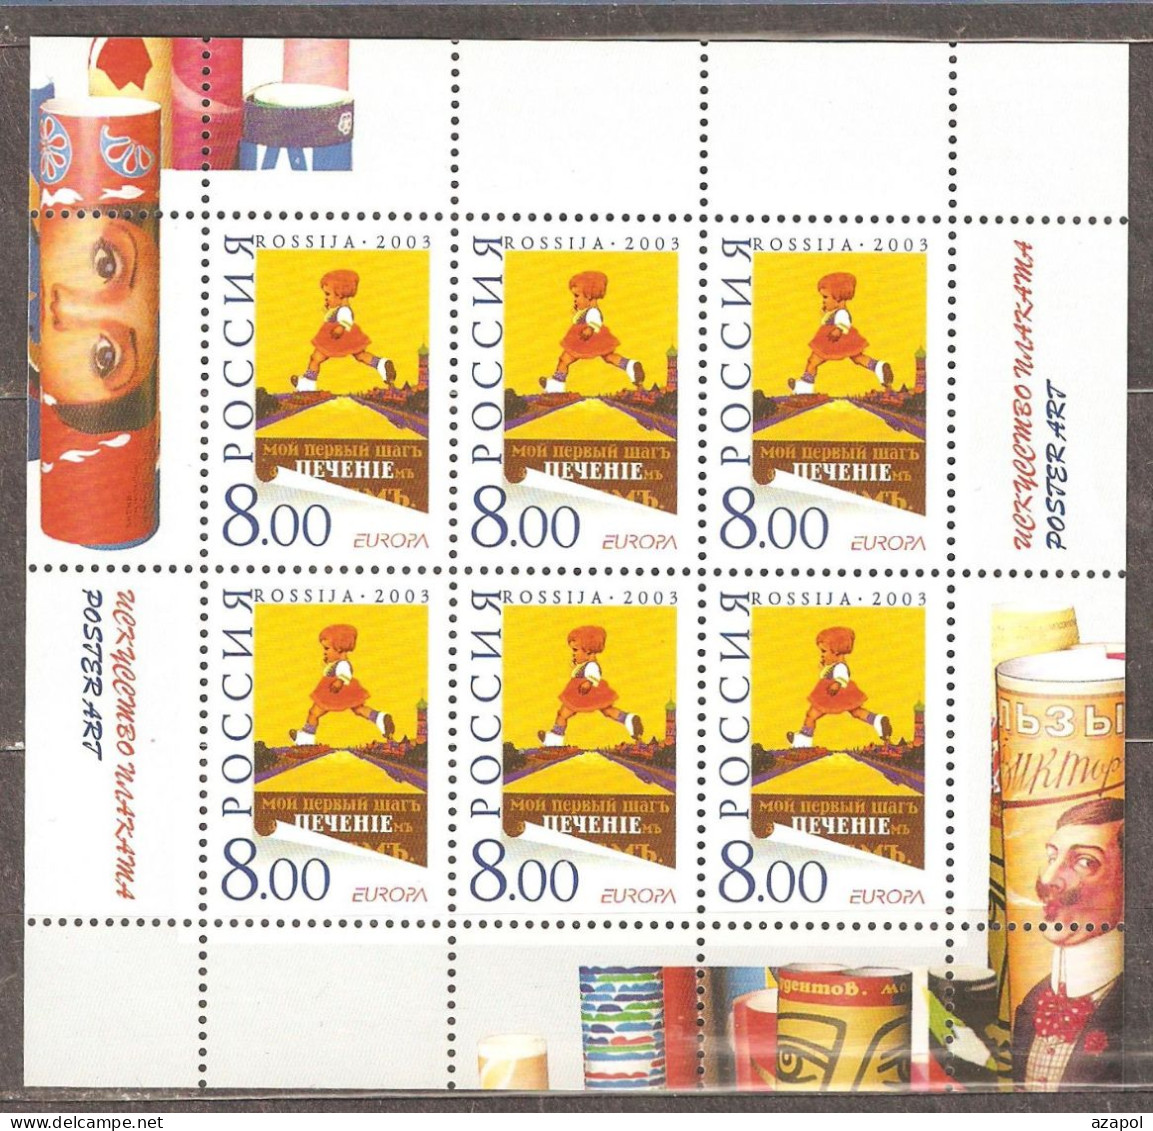 Russia: Mint Sheet, EUROPA - Poster Art, 2003, Mi#1078, MNH - Blocks & Kleinbögen